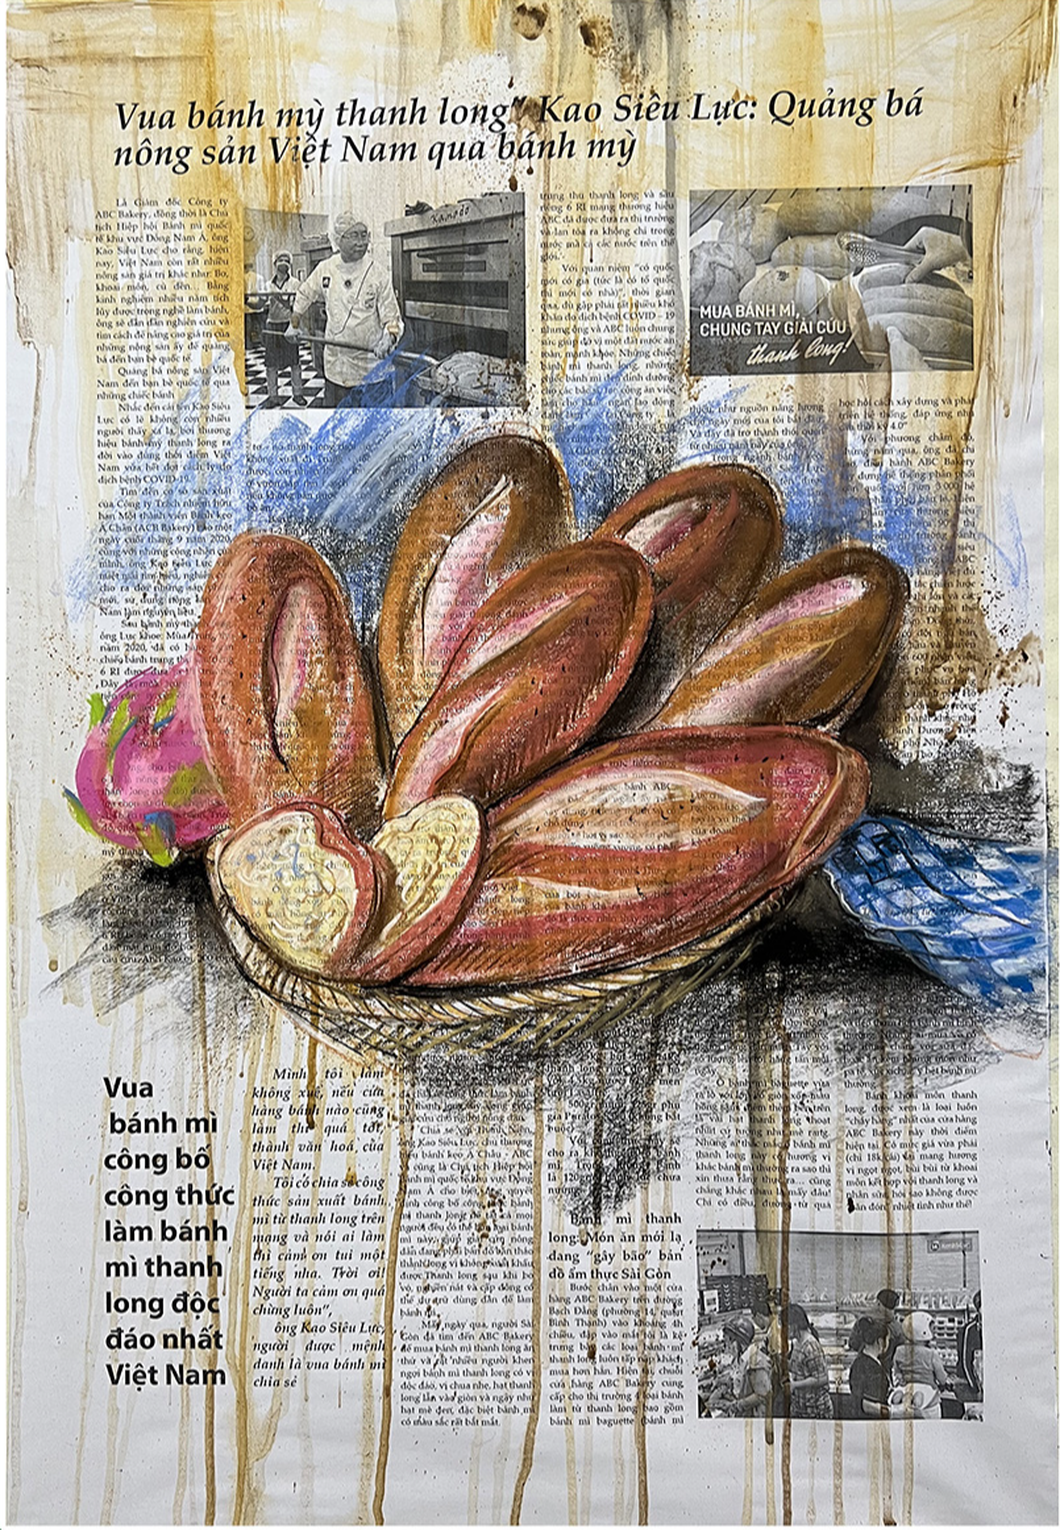 Ngắm những ổ bánh mì thật đẹp trong tranh Lê Sa Long - Ảnh 12.